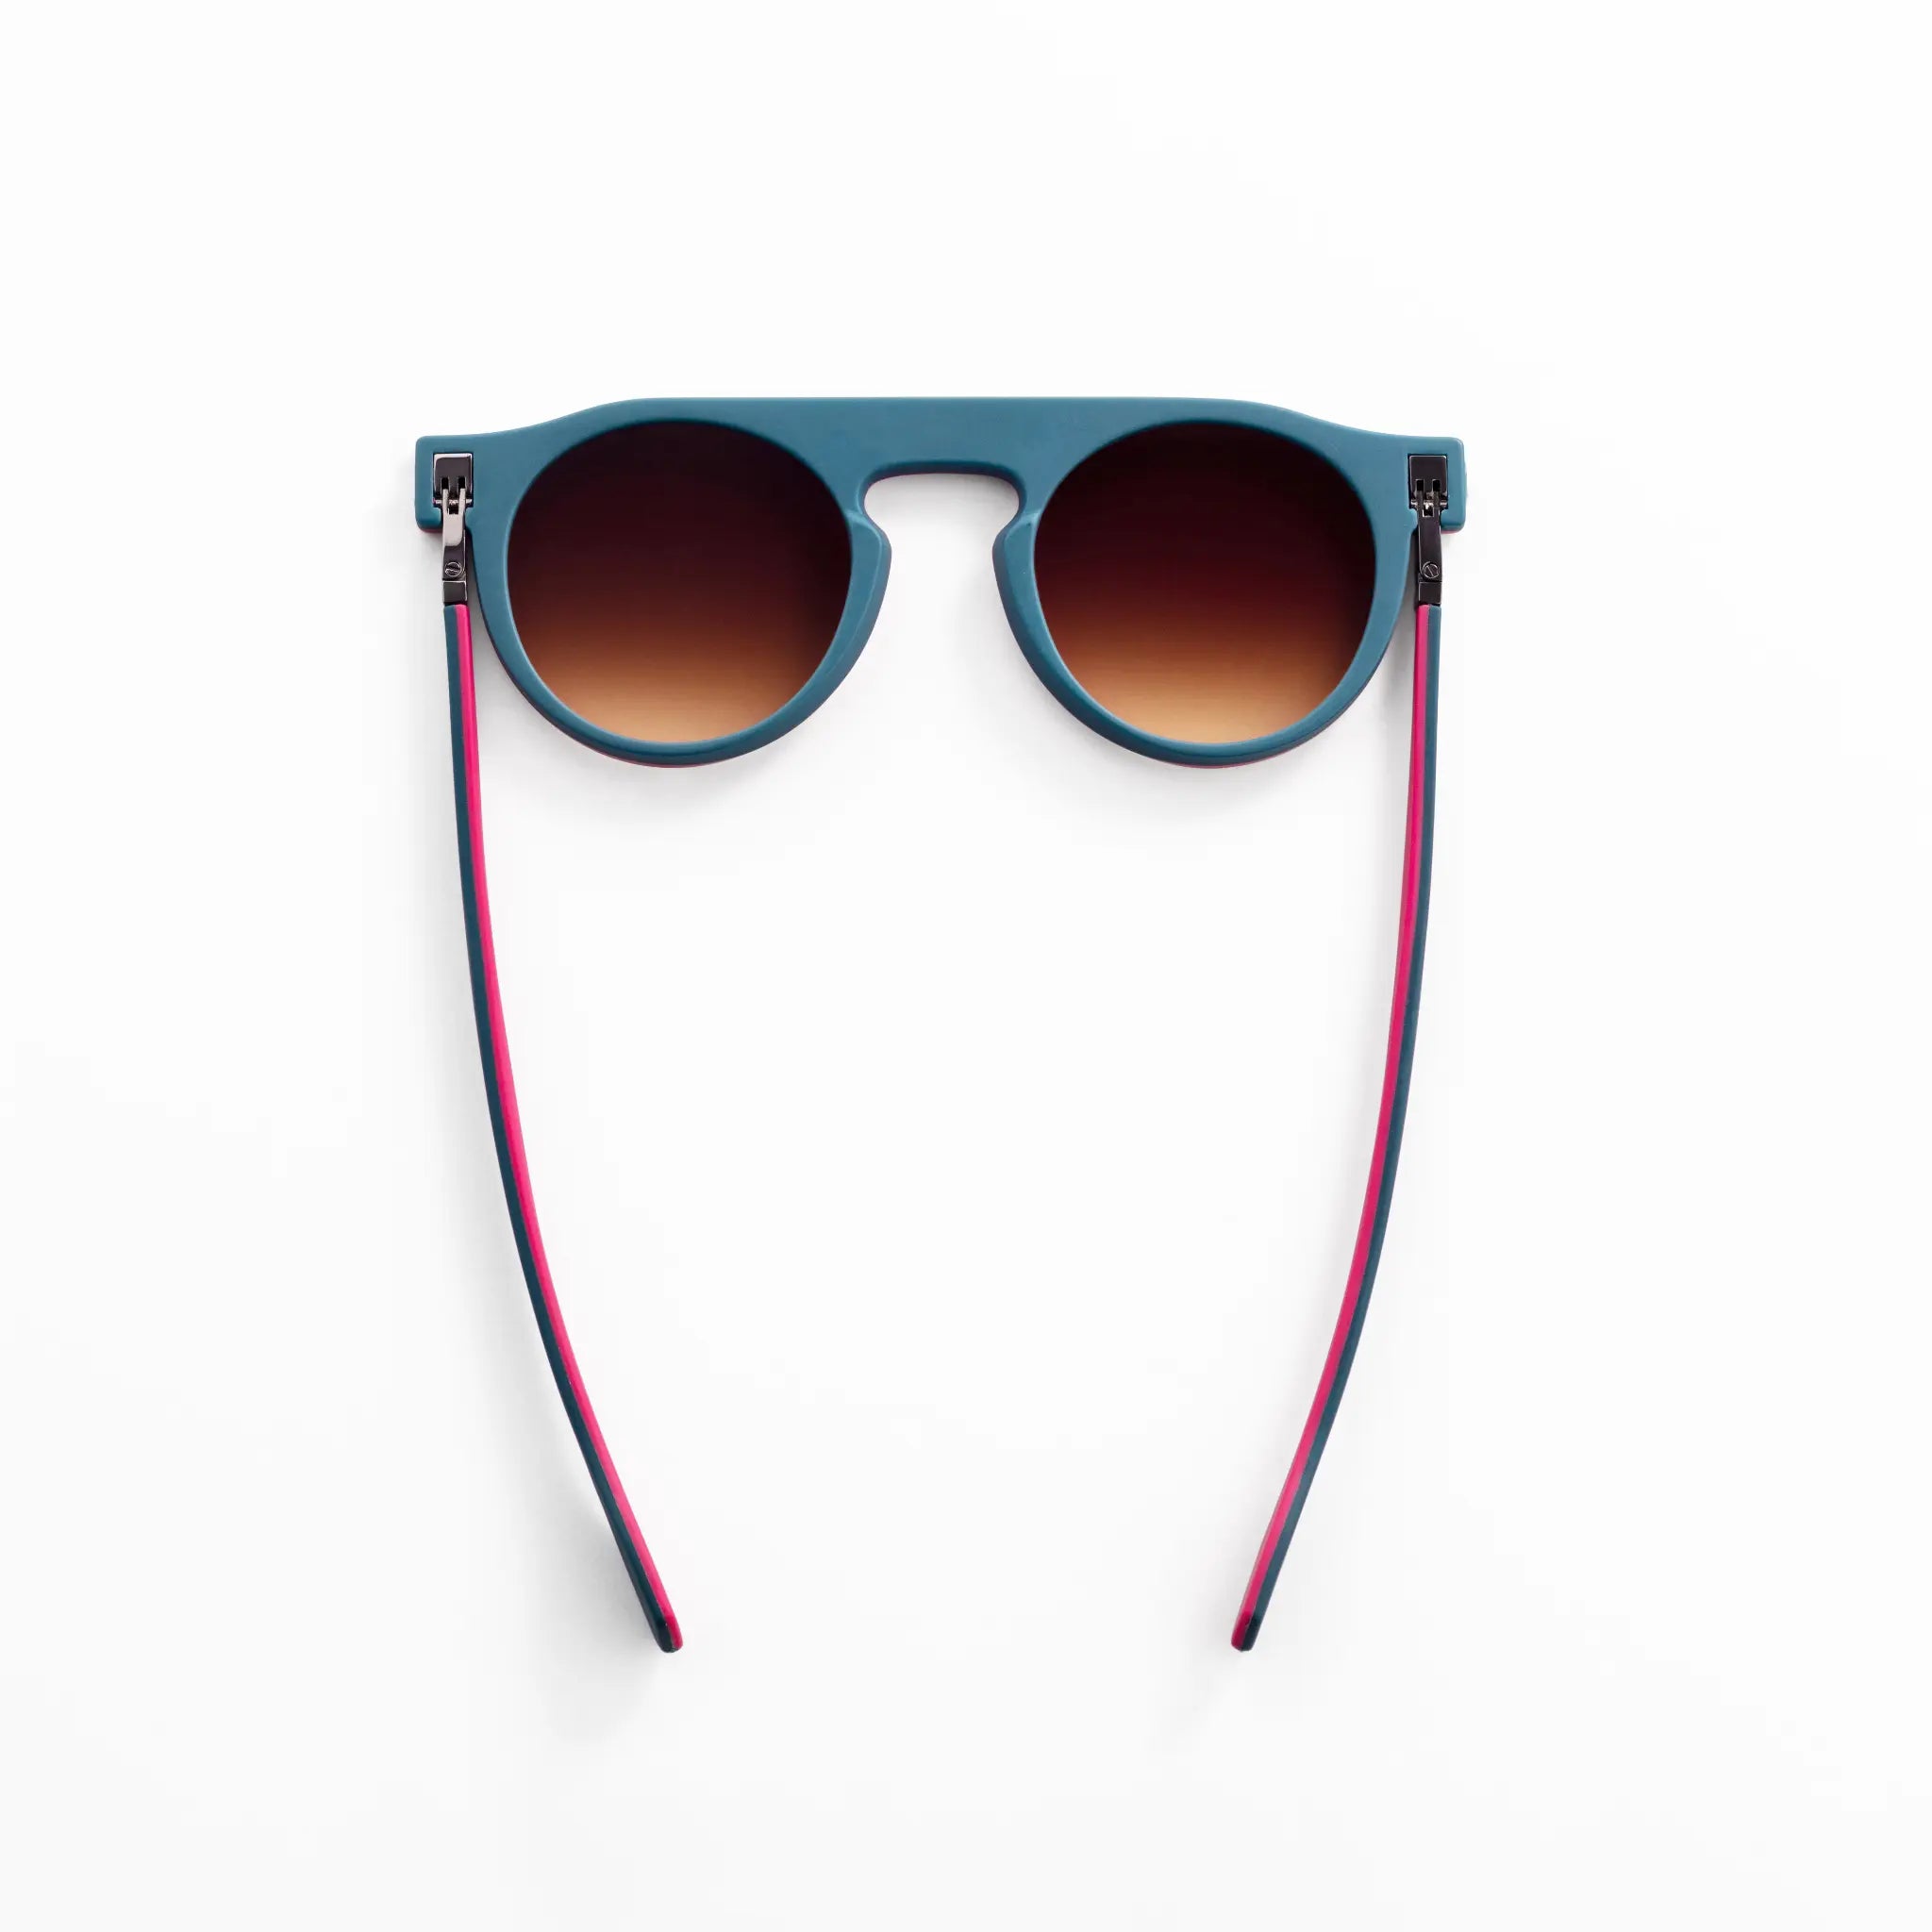 Ram Brolo reversible Bolo Tie Sunglasses Strap - Etsy